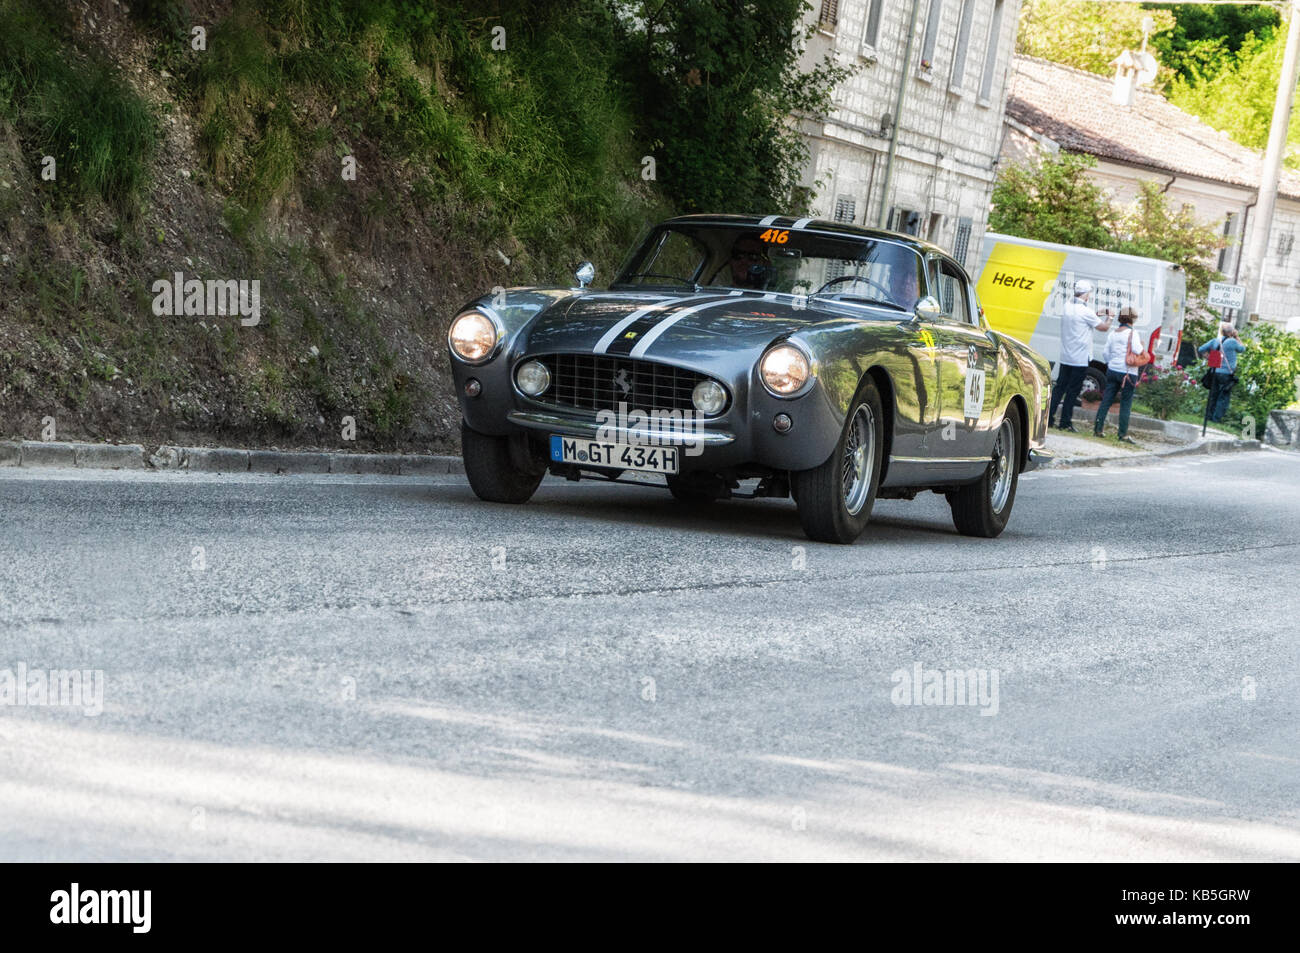 FERRARI 250 GT COUPÉ 1956 auf einem alten Rennwagen in der Rallye Mille Miglia 2017 das berühmte historische italienische Rennen (1927-1957) am 19 2017. Mai Stockfoto